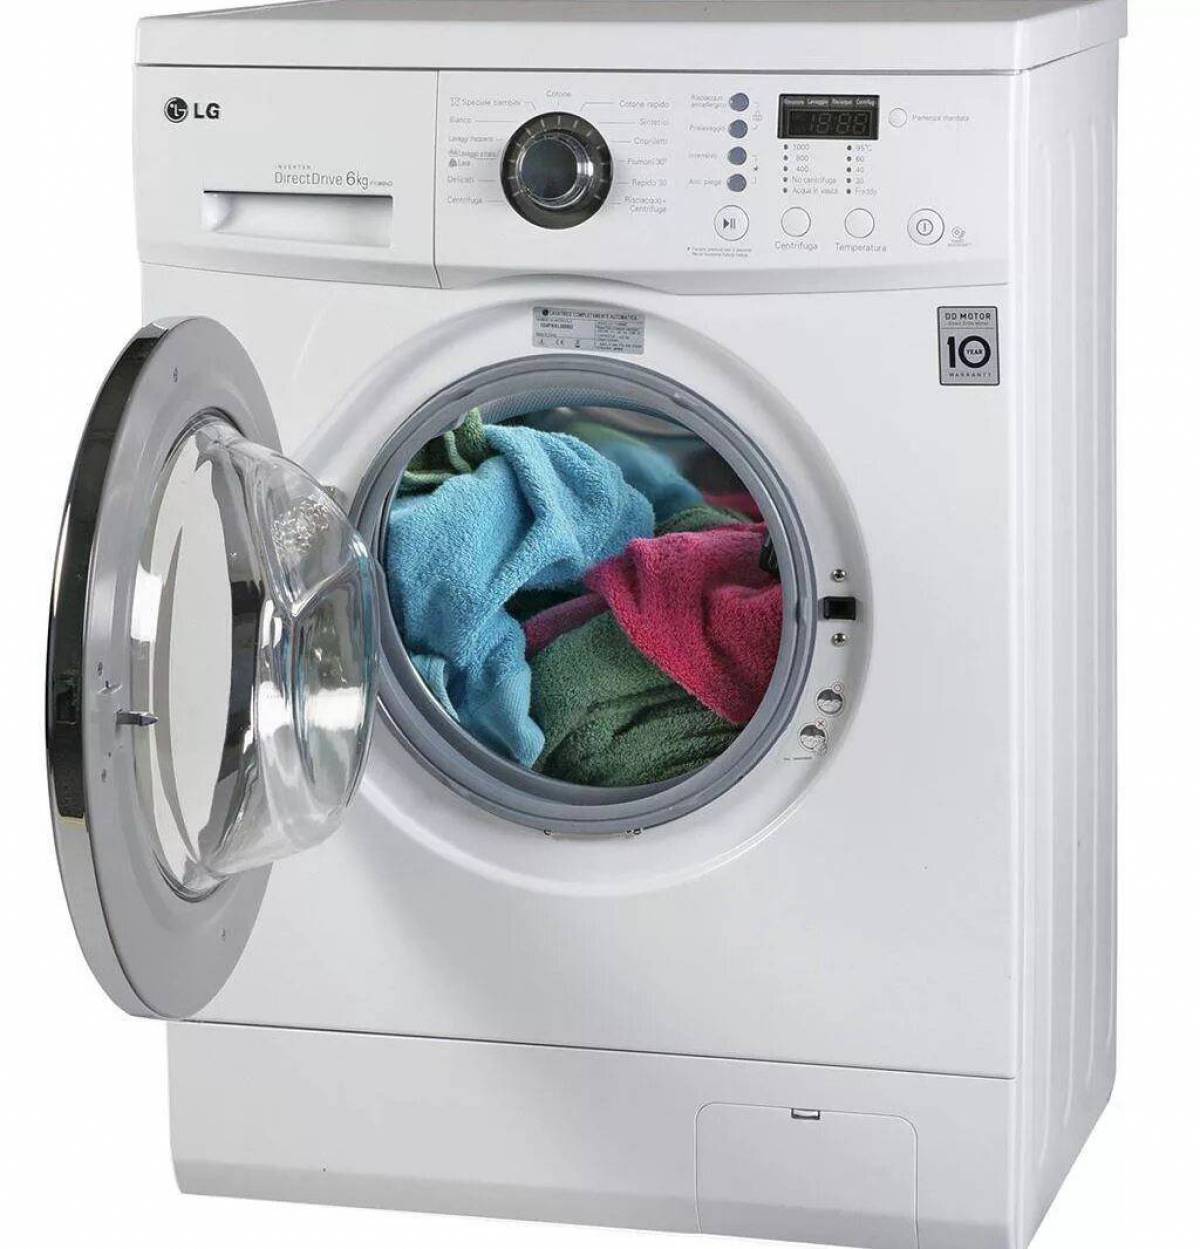 Автоматические стиральные машинки. LG 1089nd стиральная машина. Стиральная машинка LG f10b8nd. Стиральная машина LG washing Machine. Стиральная машина LG F-1089nd.